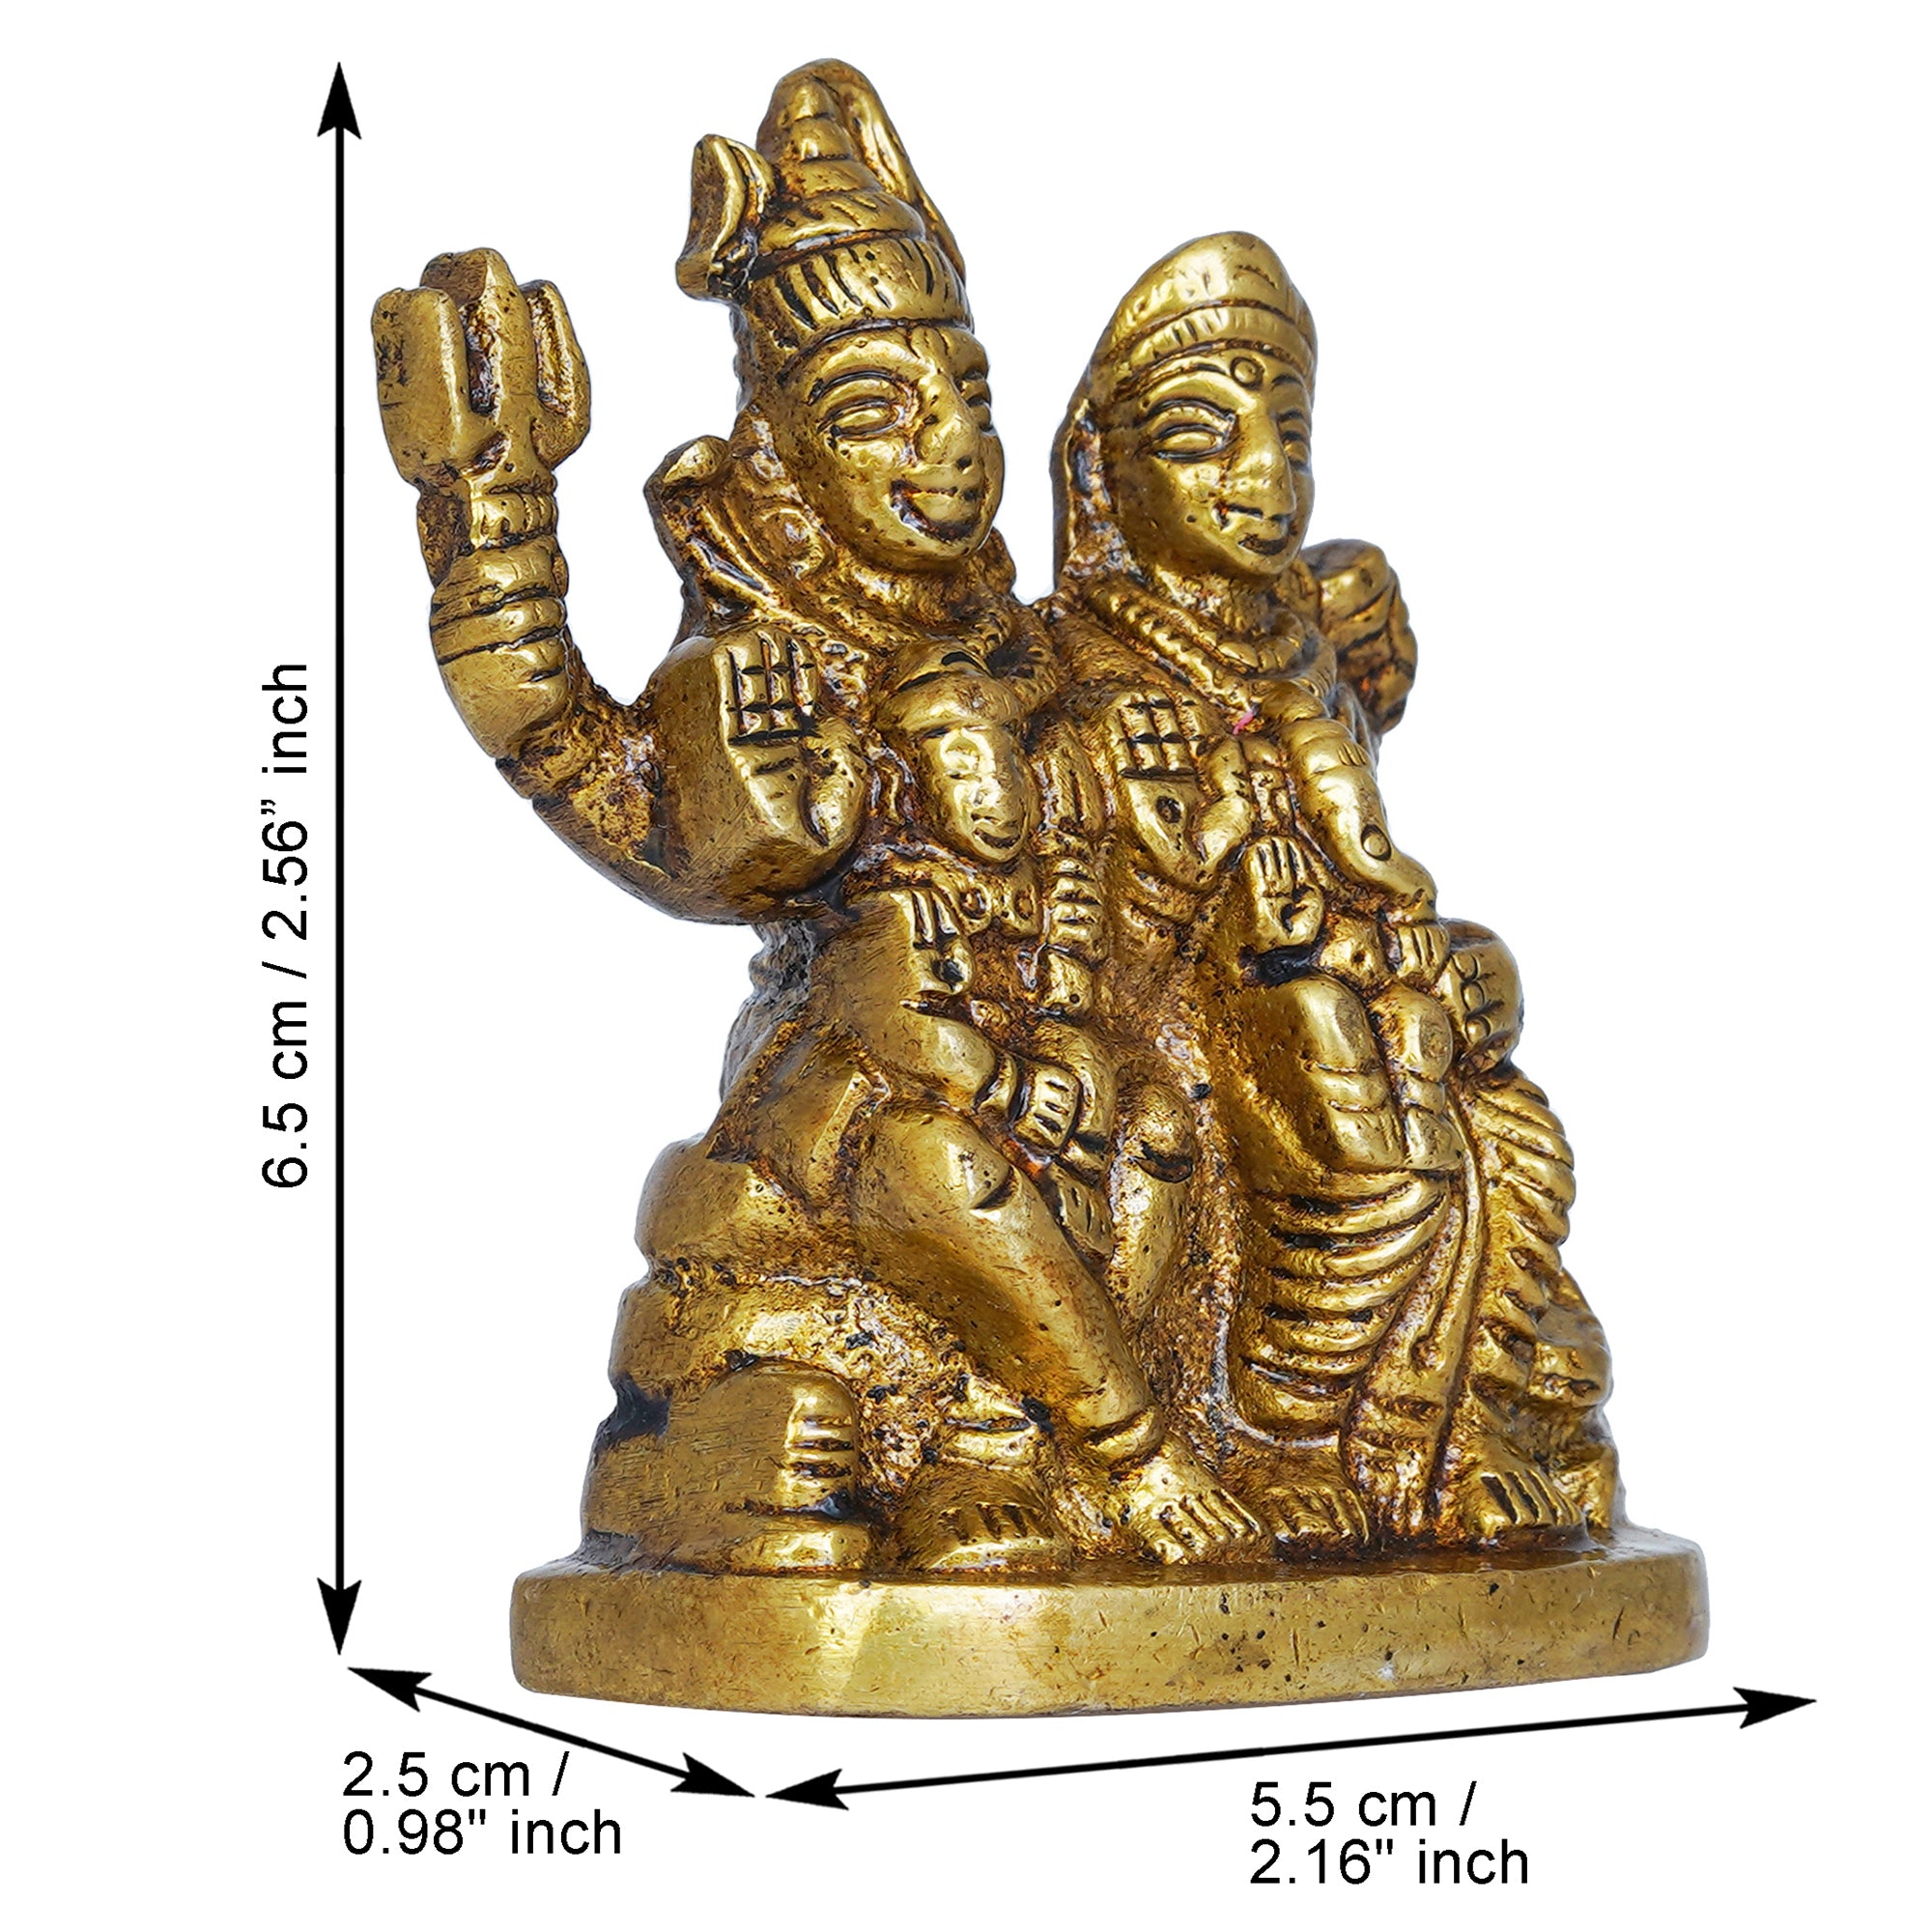 Golden Brass Shiv Parivar Murti Idol - Lord Shiva, Parvati, Ganesha, Kartikeya Statue for Home Temple, Car Dashboard 3